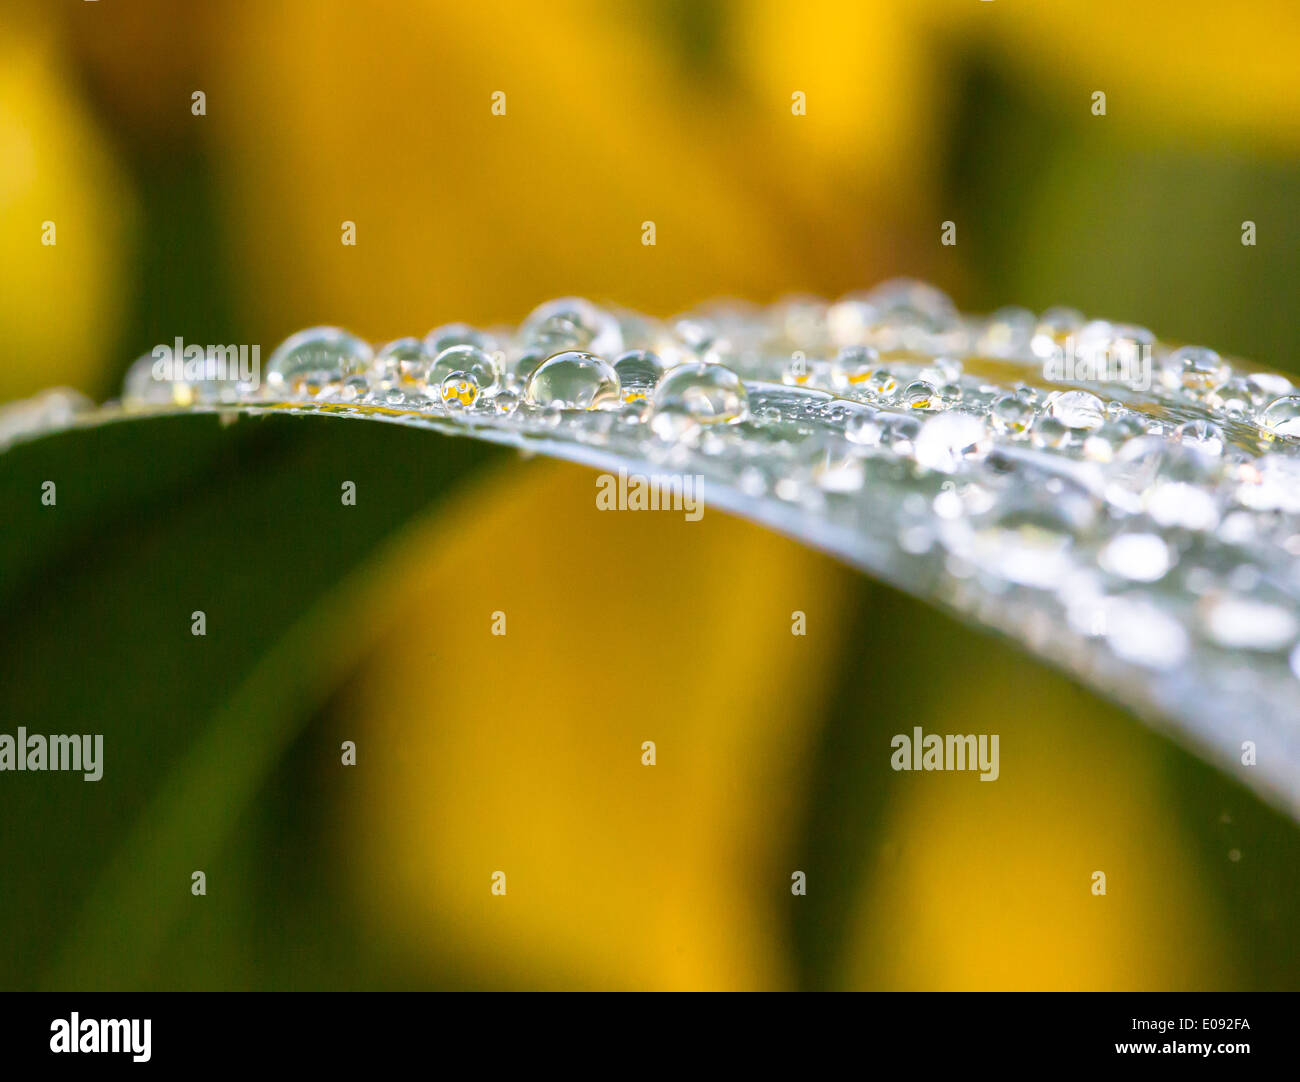 Many raindrops on plant leaf. Close-up. Yellow background. Horizontal. Stock Photo